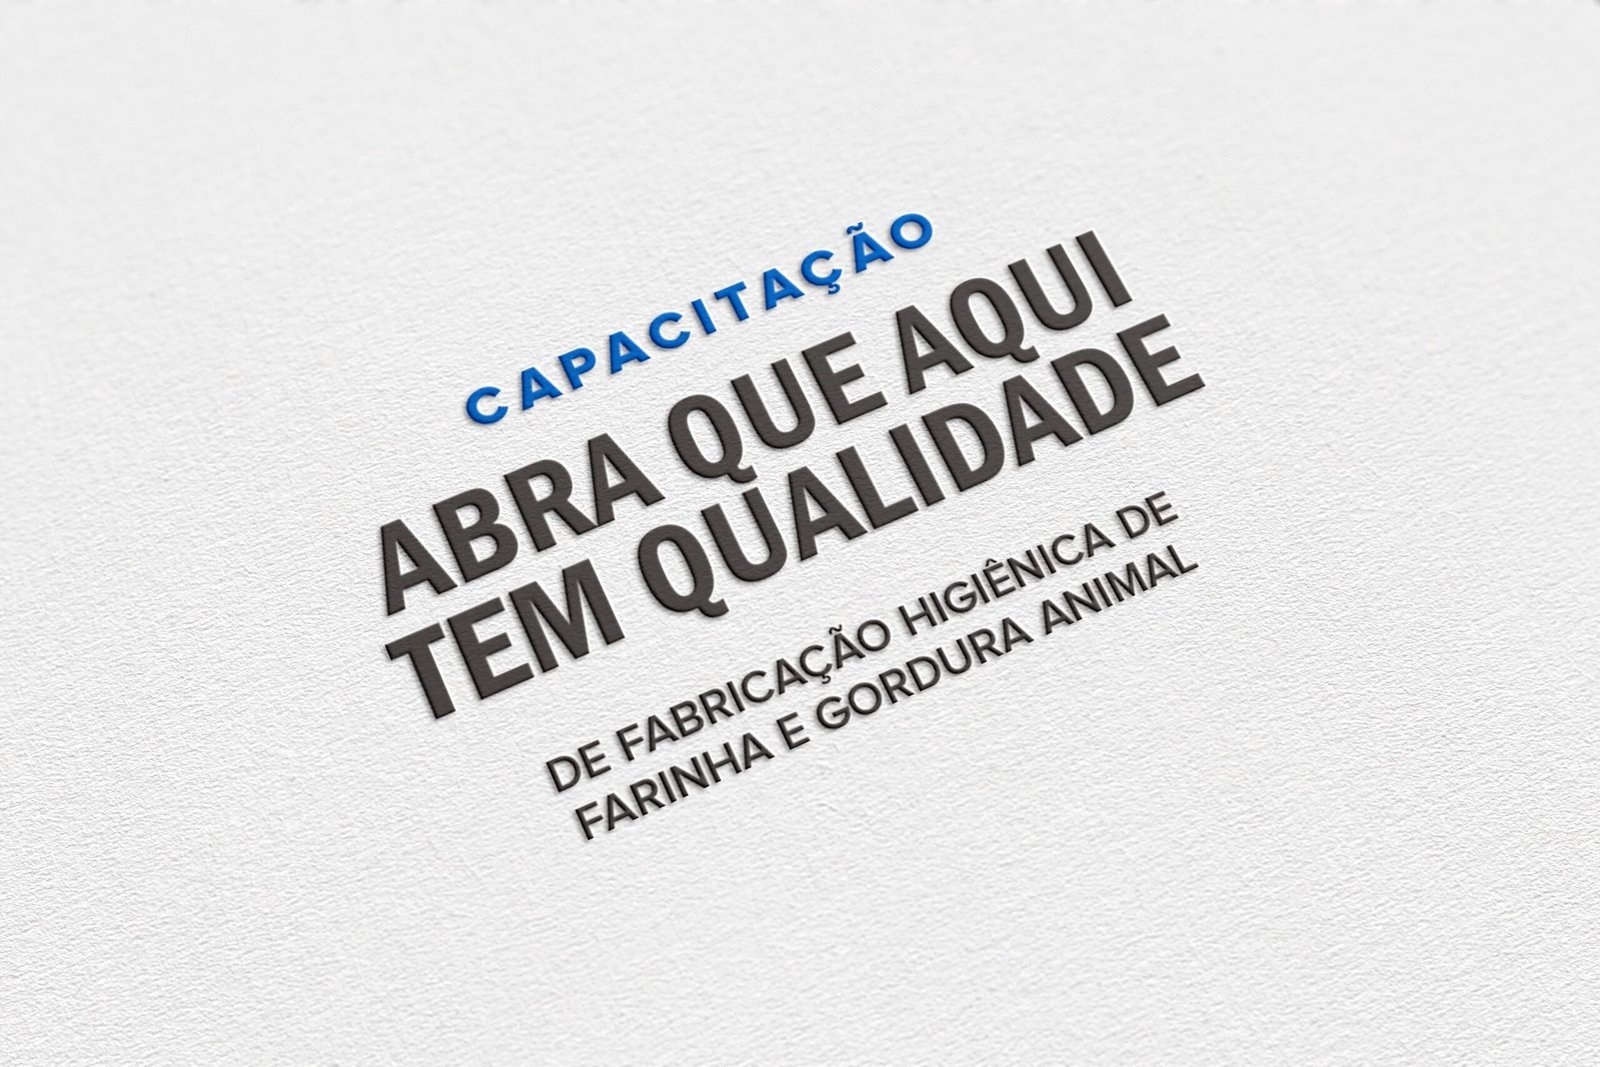 ABRA promove o Programa AATQ, em julho, na cidade de Curitiba – inscrições abertas!